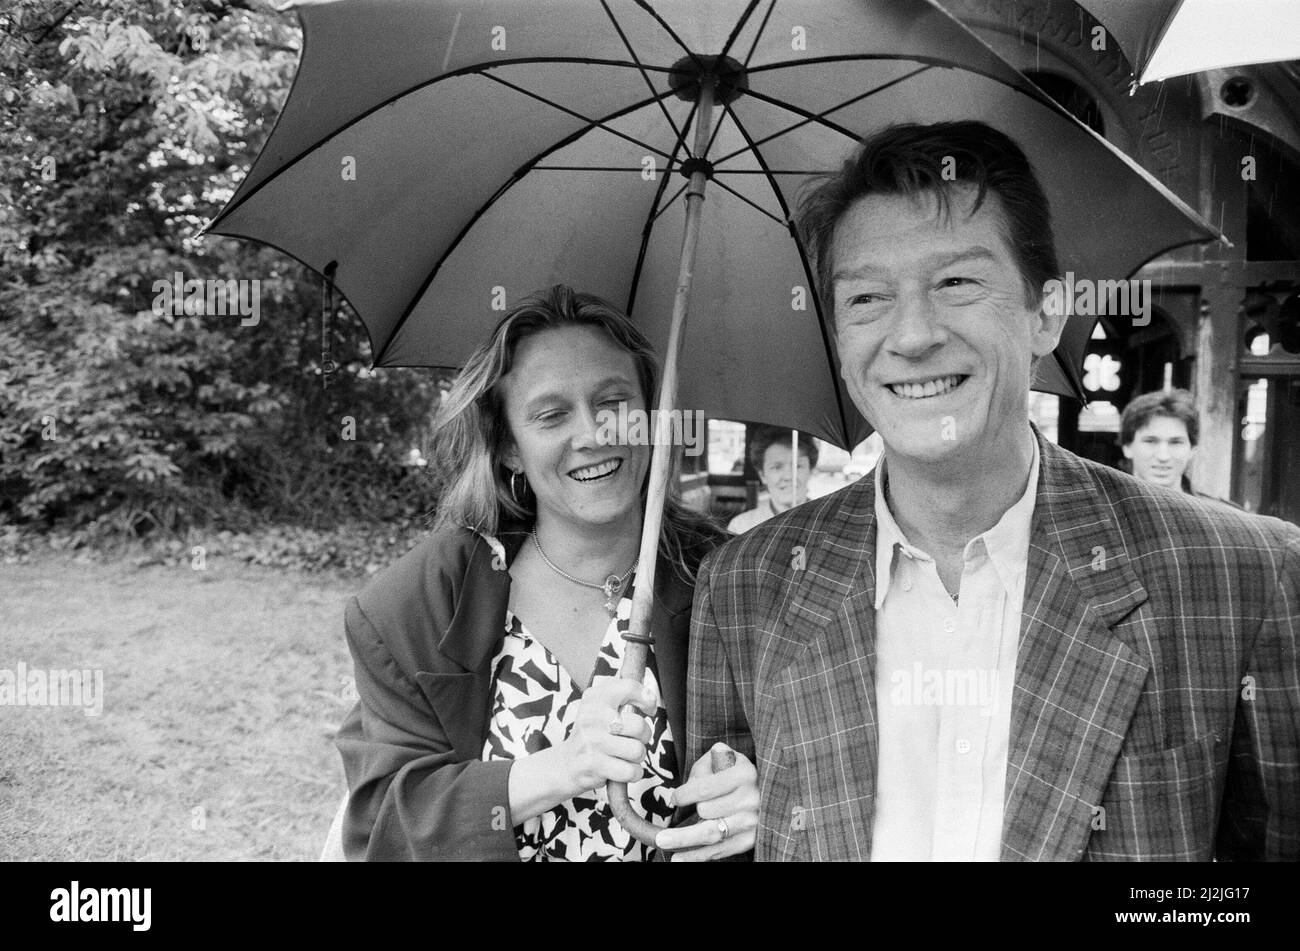 John ferì con sua moglie Donna Peacock.John e Donna si sposarono dal 1984 al 1990. Donna era la moglie del 2nd di John Hurt. Qui sono raffigurati in un matrimonio di amici a Ealing, West London. Foto scattata il 23rd maggio 1987 Foto Stock